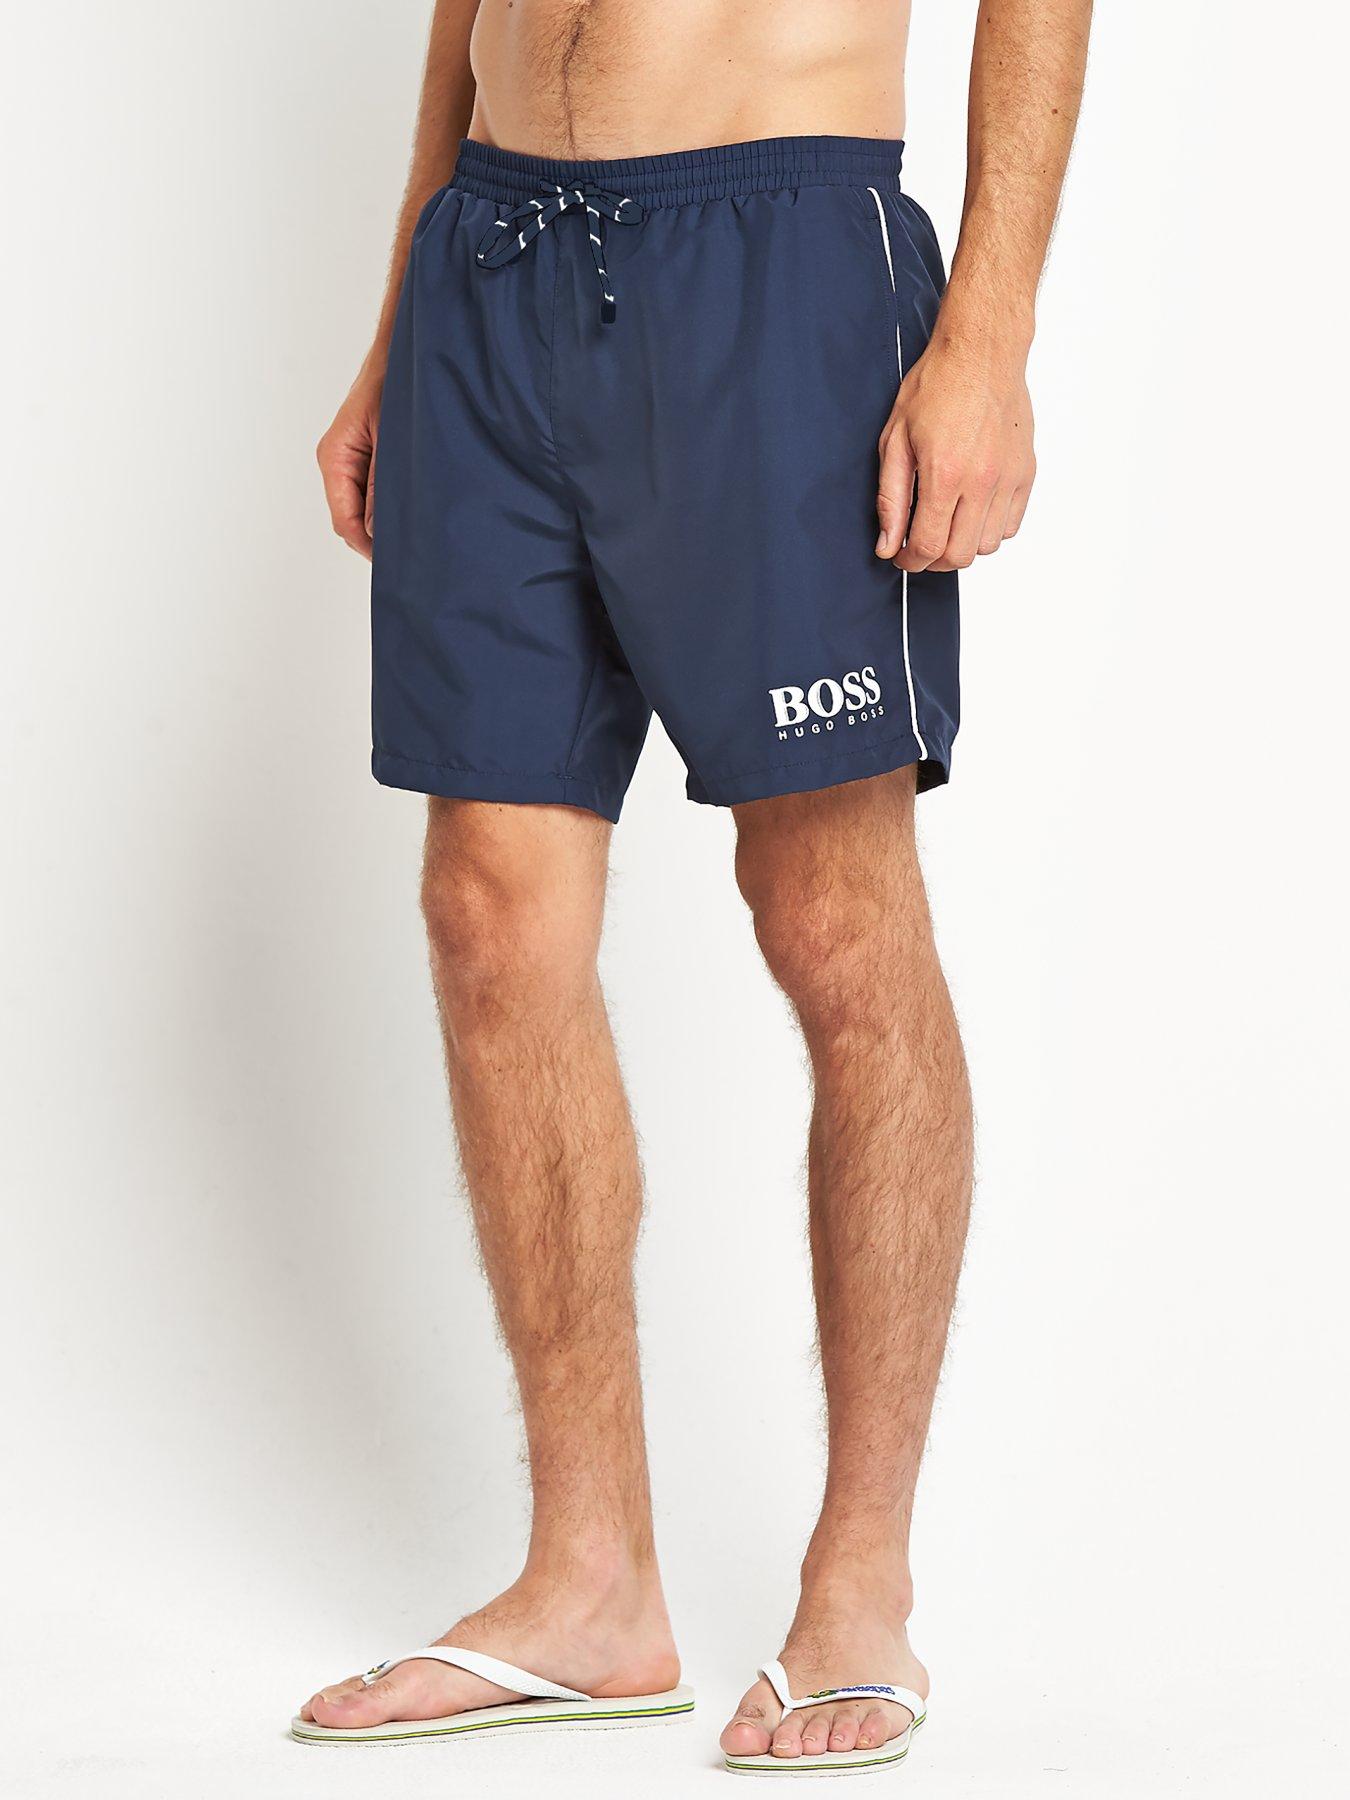 hugo boss navy shorts